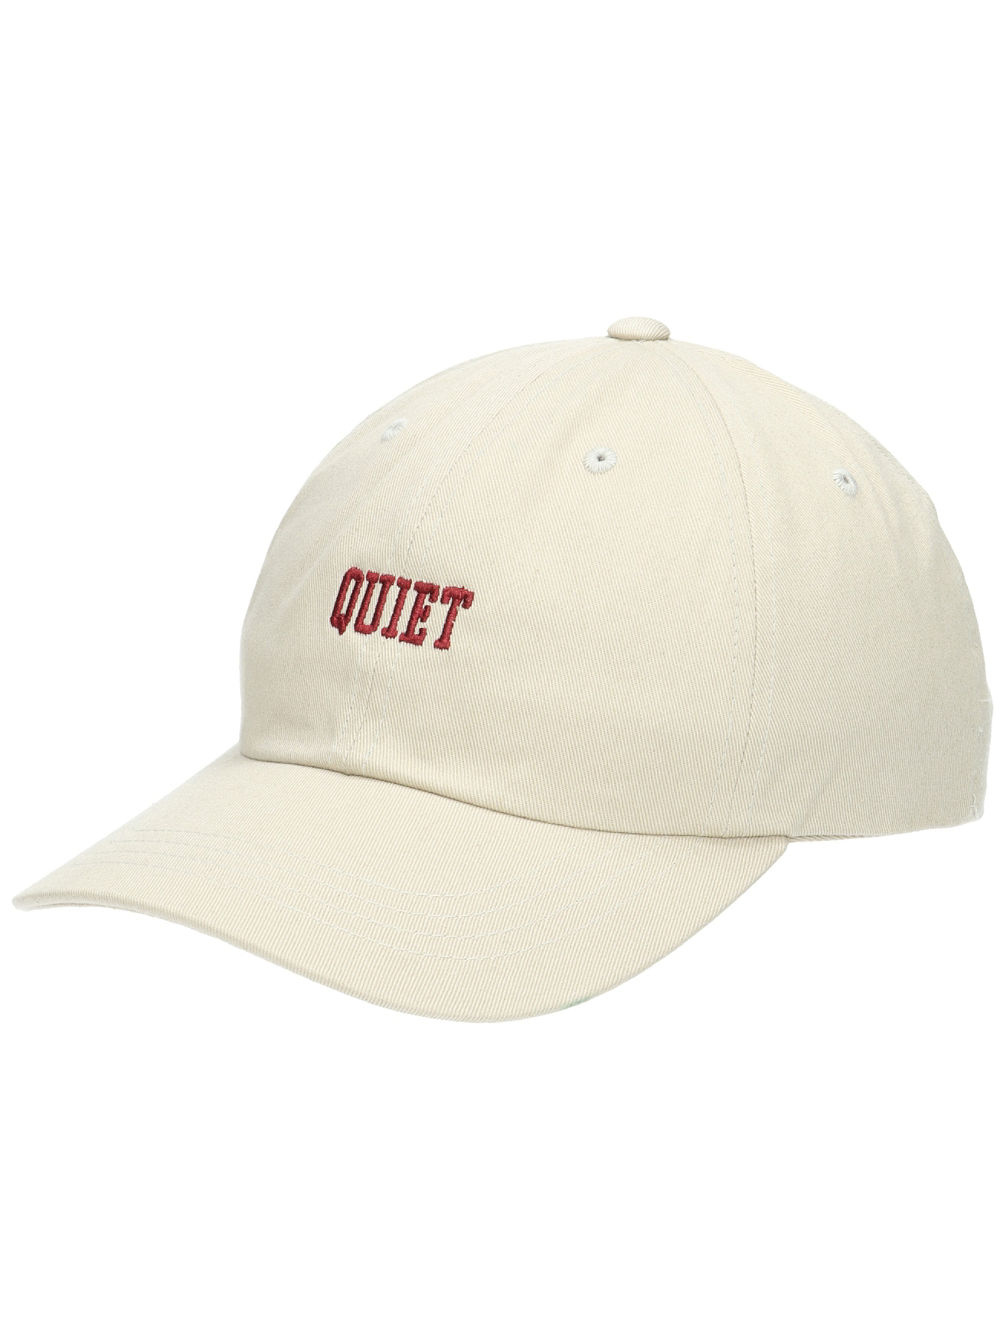 Quiet Dad Hat Cap